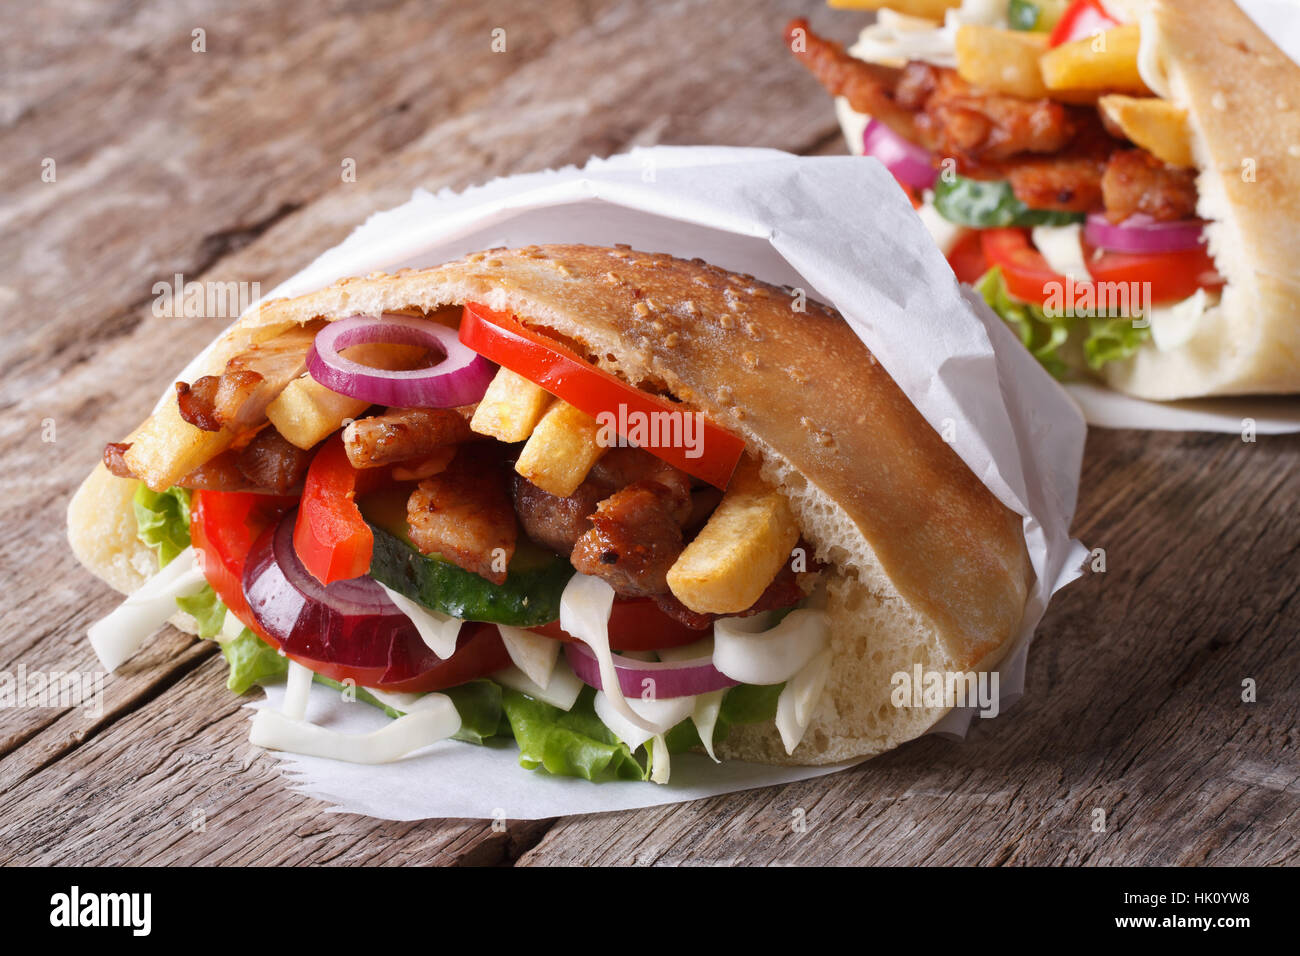 Dans le pain pita shawarma enveloppés dans des close-up sur la table horizontale Banque D'Images